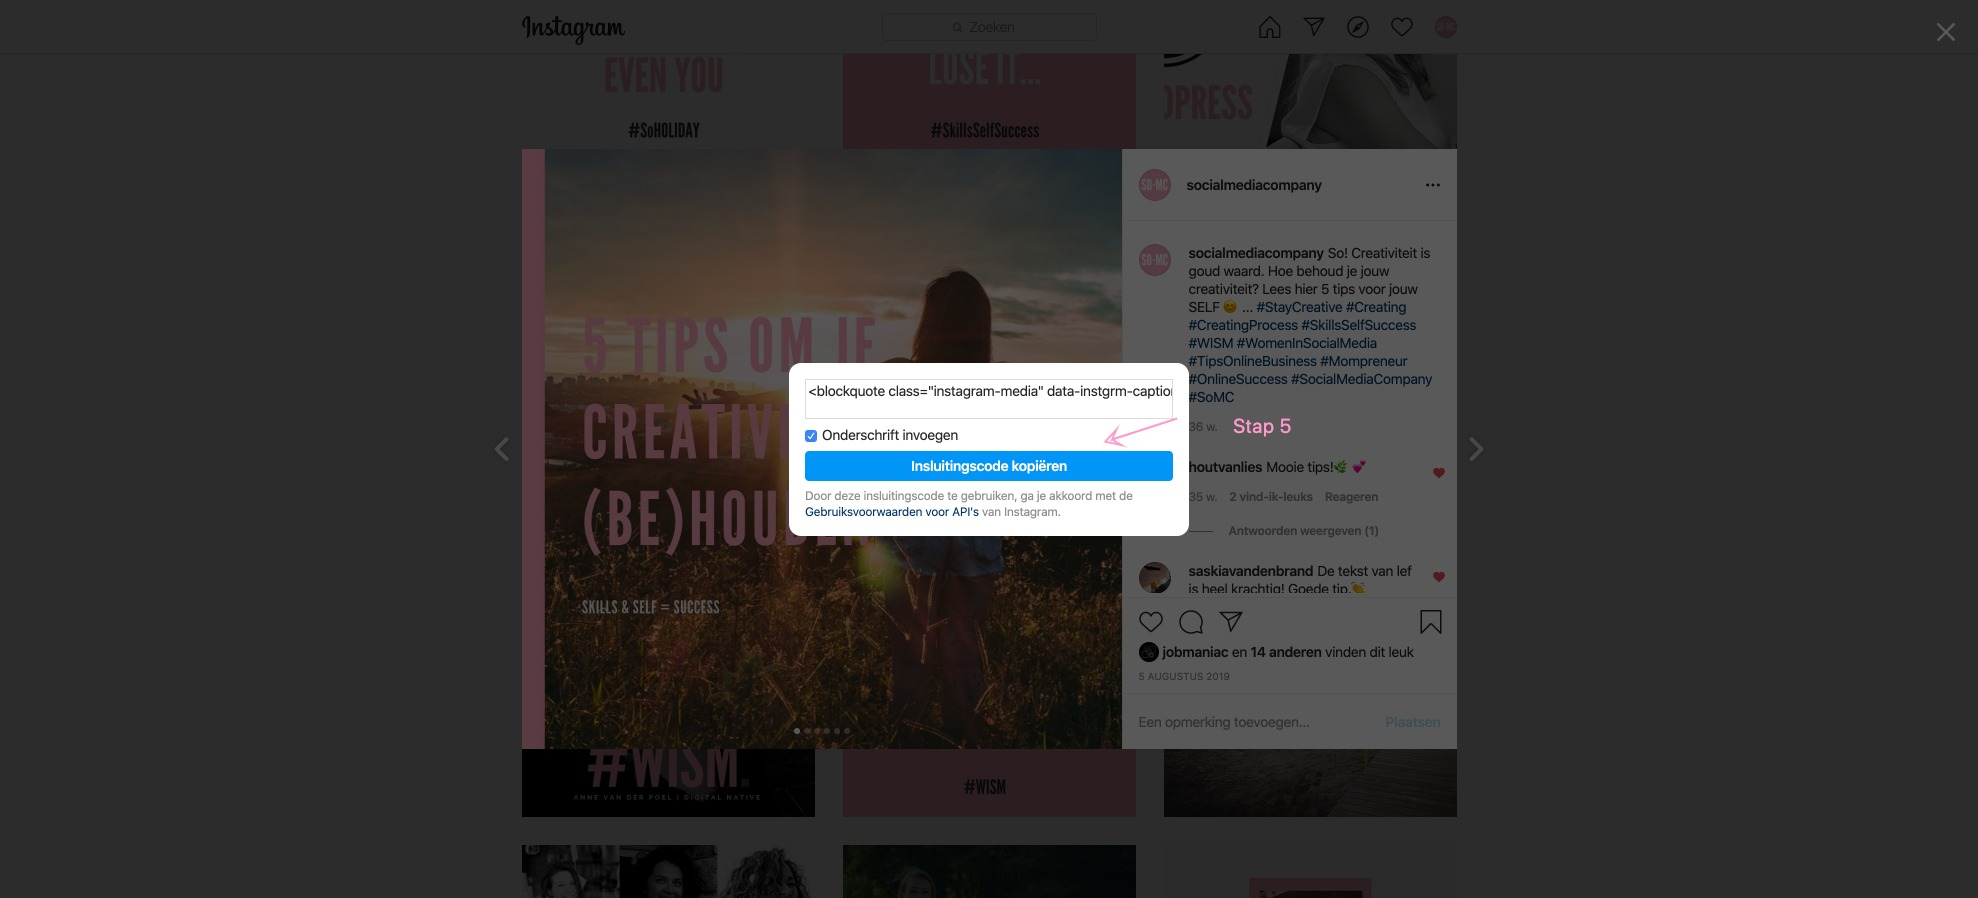 Hoe sluit ik een Instagram bericht in mijn website?